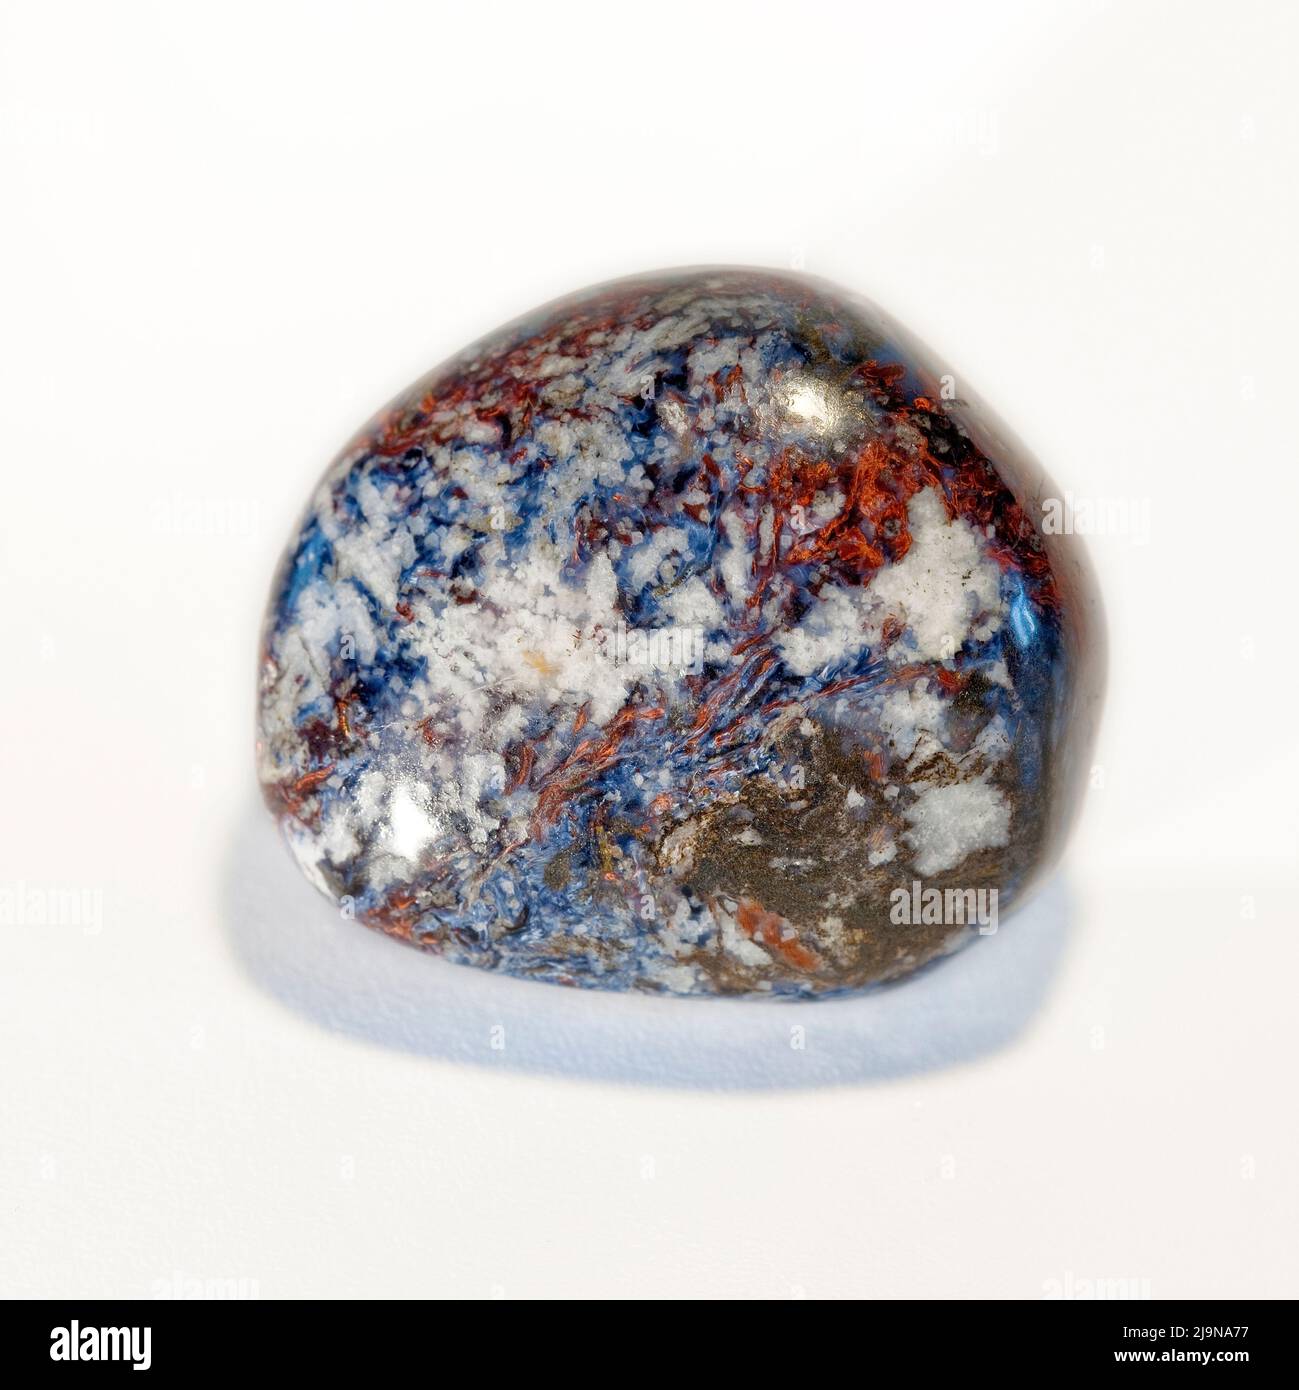 Macro primer plano fotografía en color de 'Pietersite' Una piedra preciosa semi-cristal utilizada en la terapia de curación de cristales Foto de stock